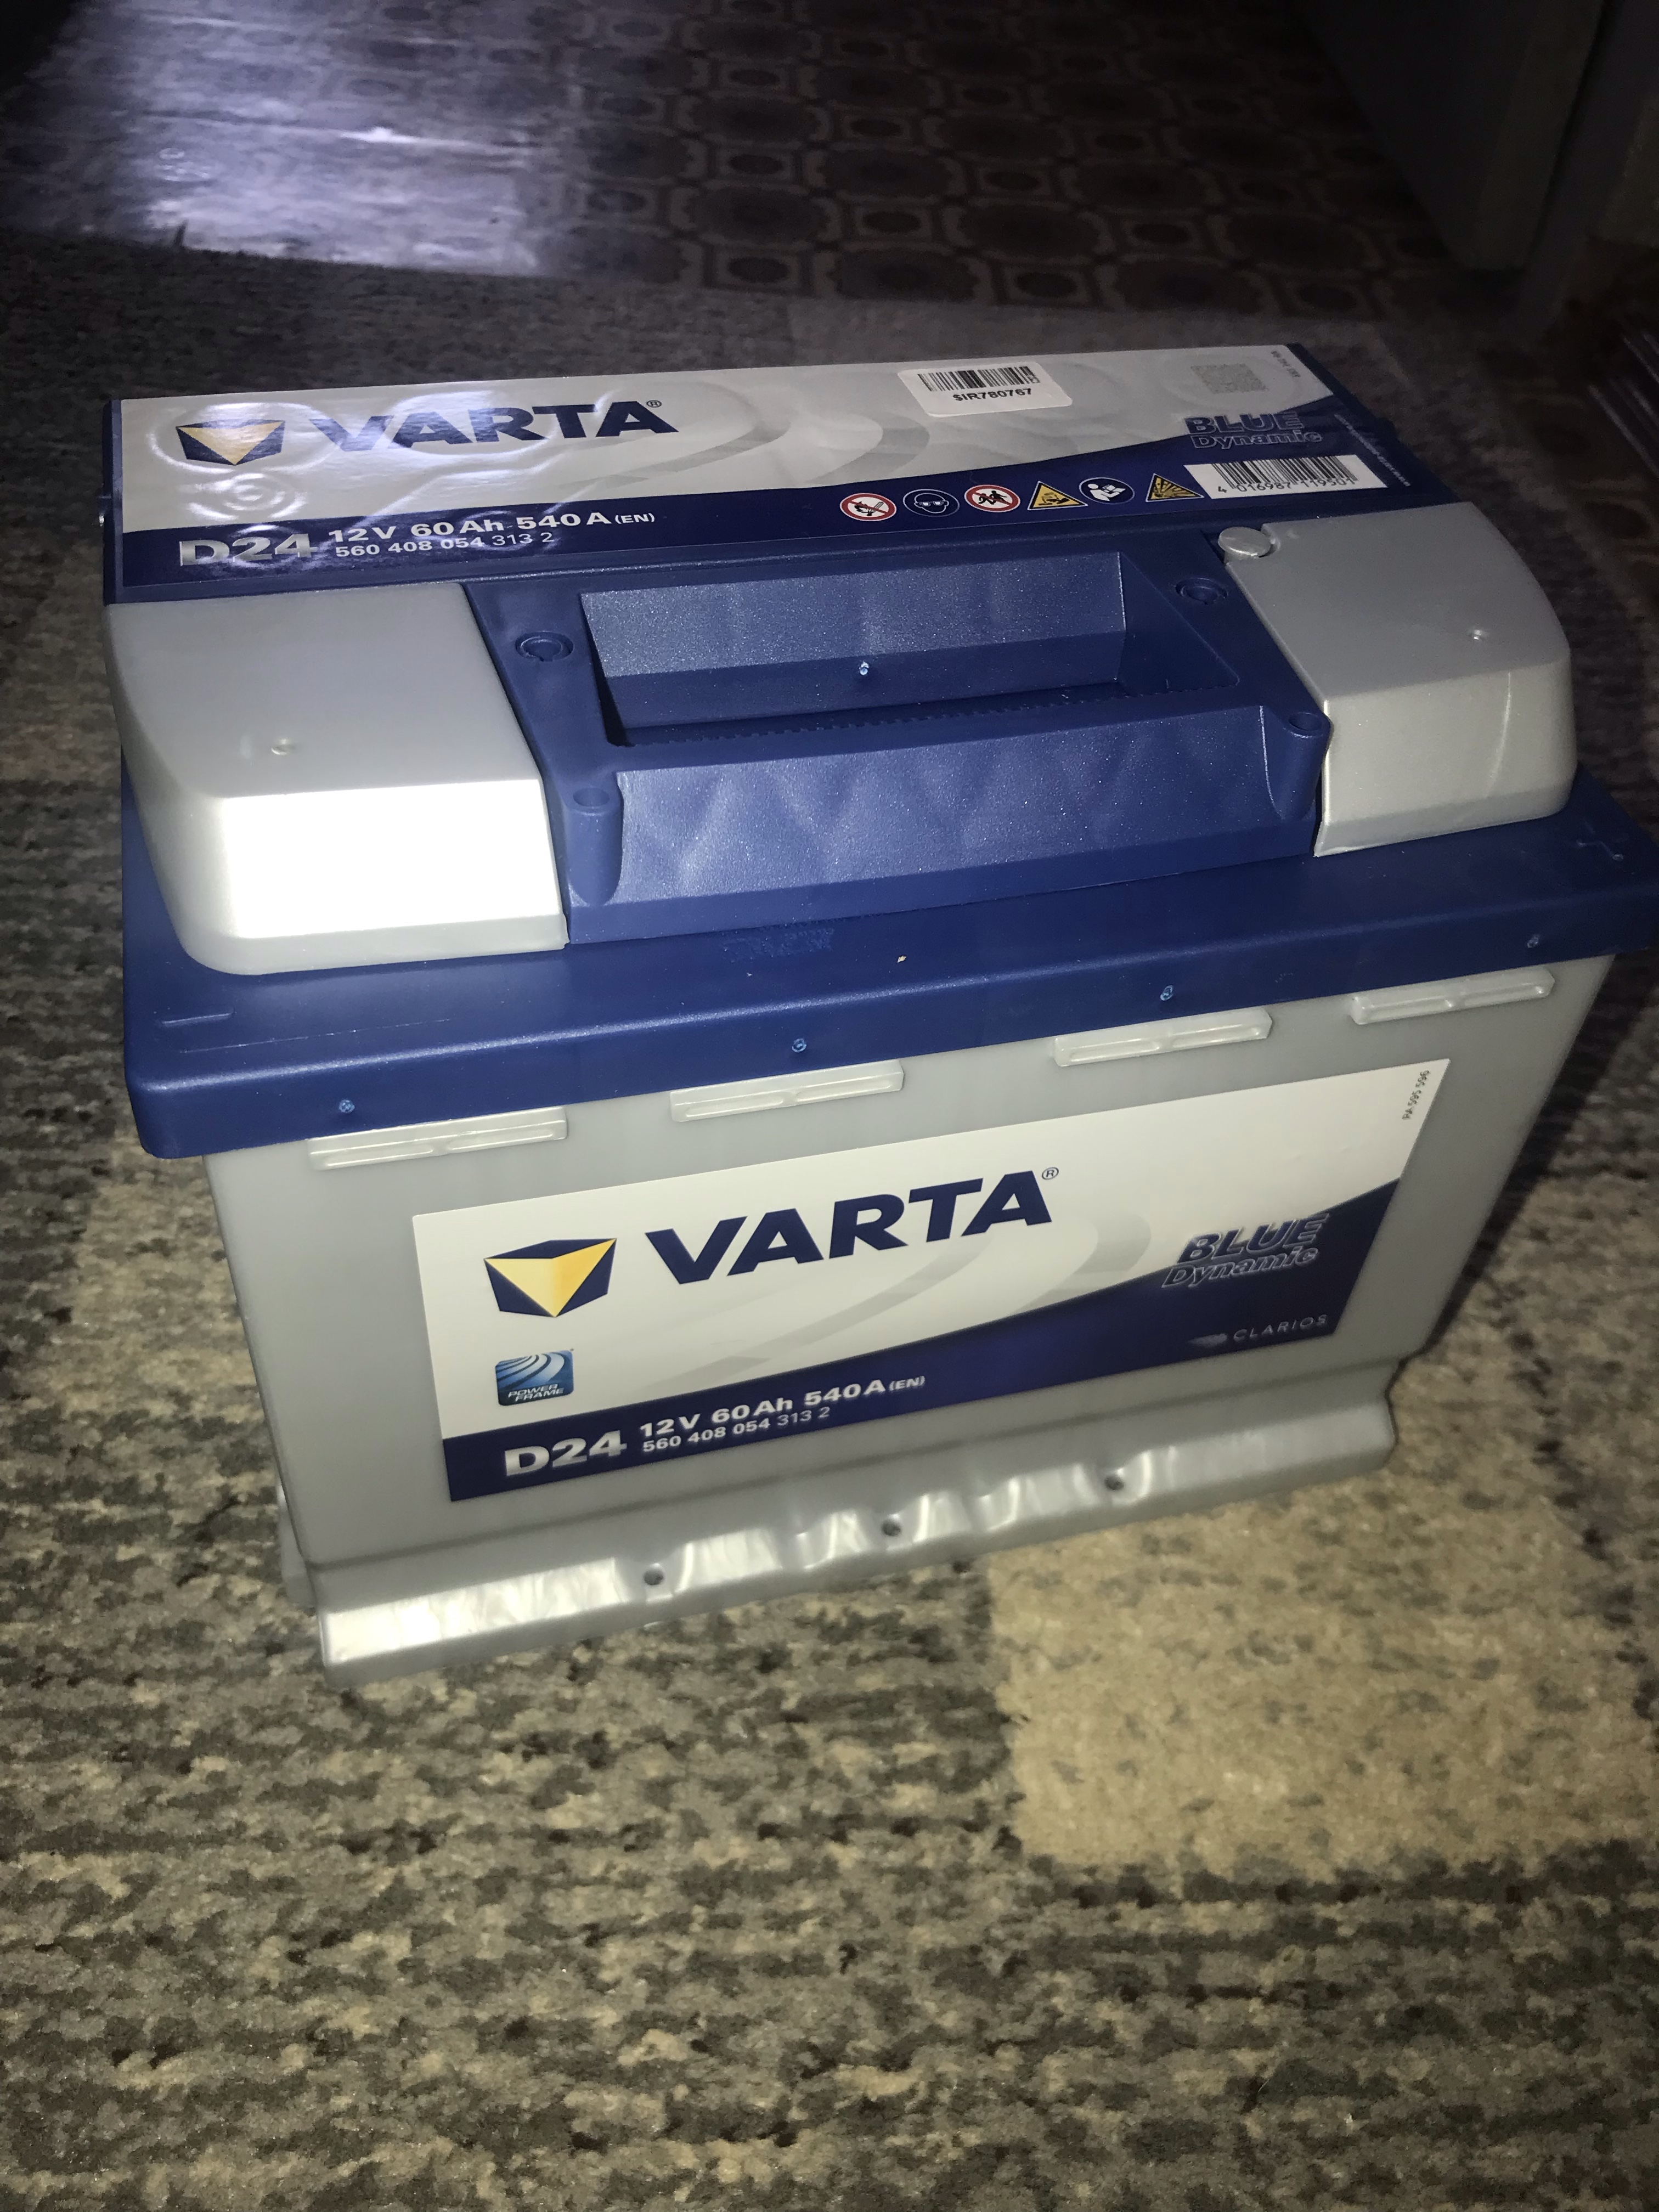 Купить автомобильный аккумулятор Varta D24 6-СТ 60Ah R+ 540A Blue